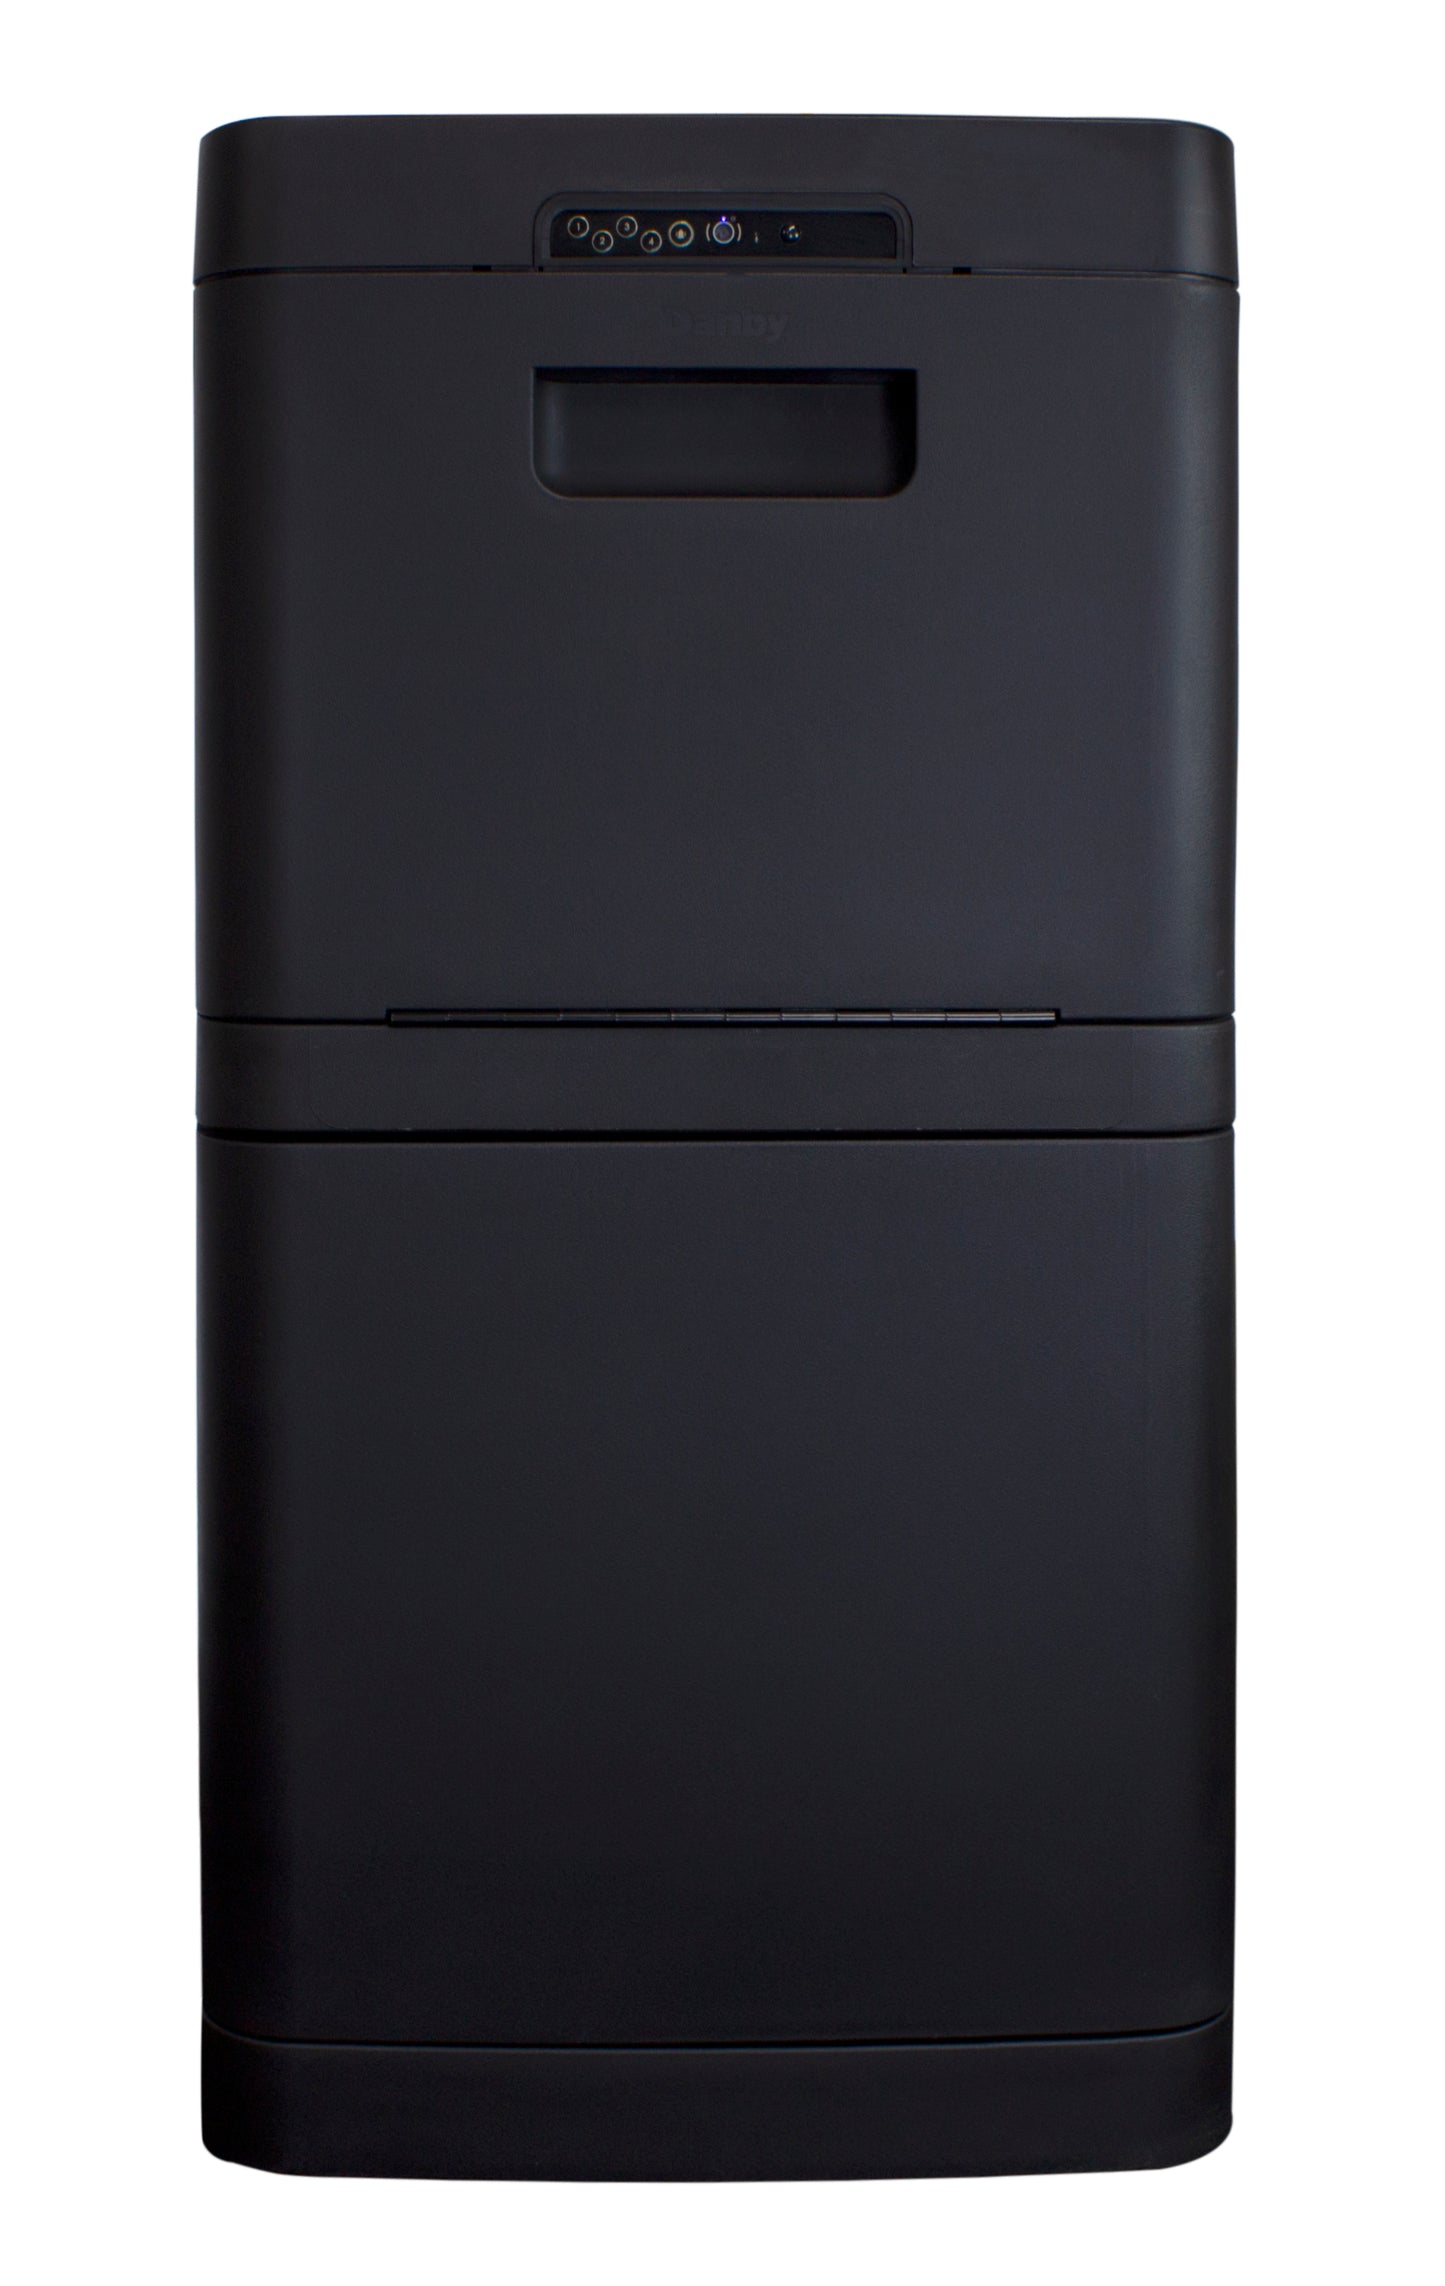 Danby Parcel Guard: The Smart Mailbox - Black